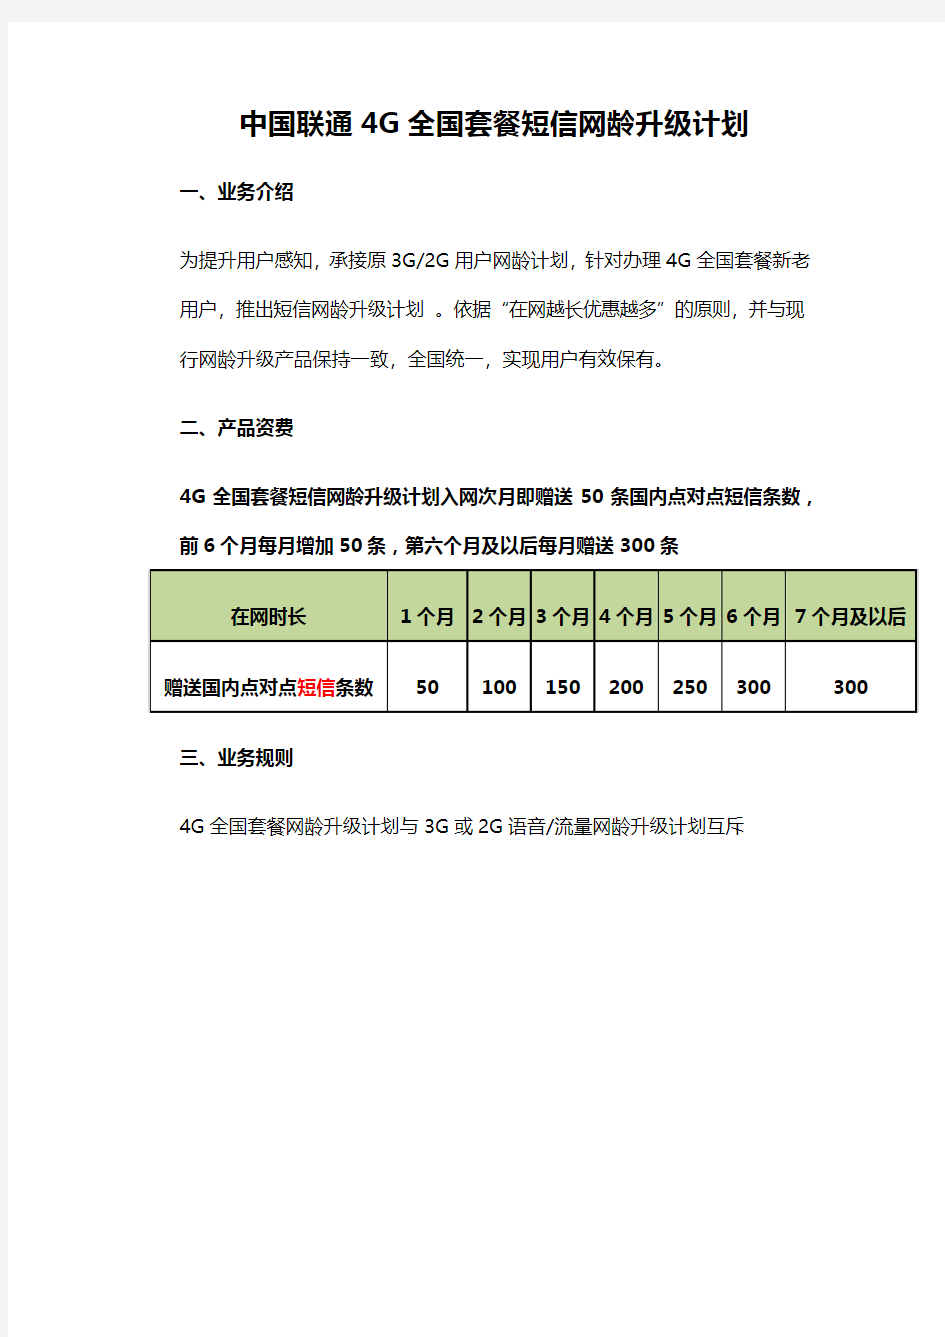 中国联通4G全国套餐短信网龄升级计划